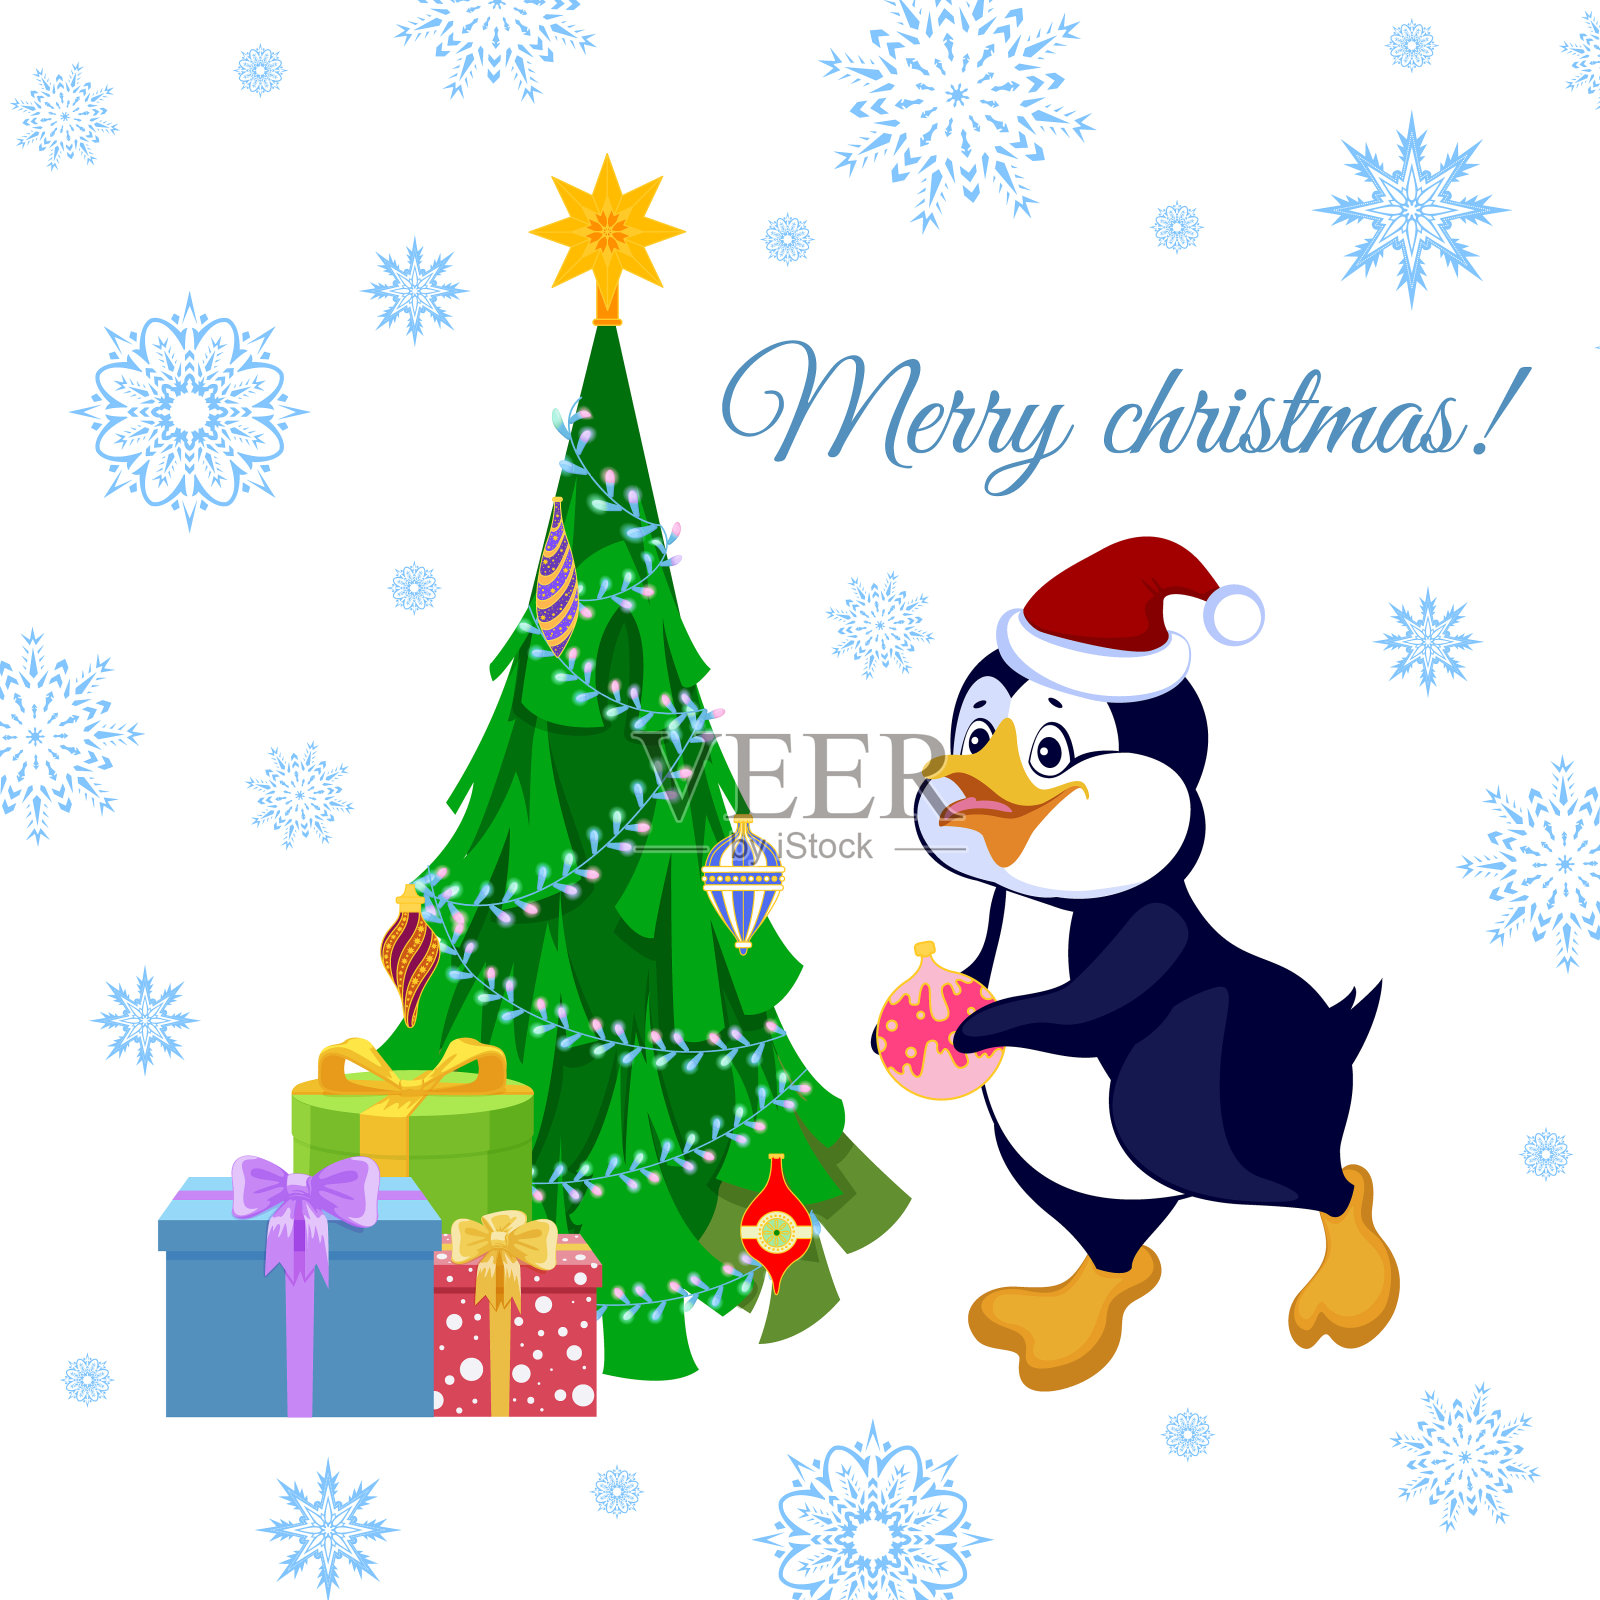 用企鹅装饰圣诞树的圣诞贺卡。向量插画图片素材